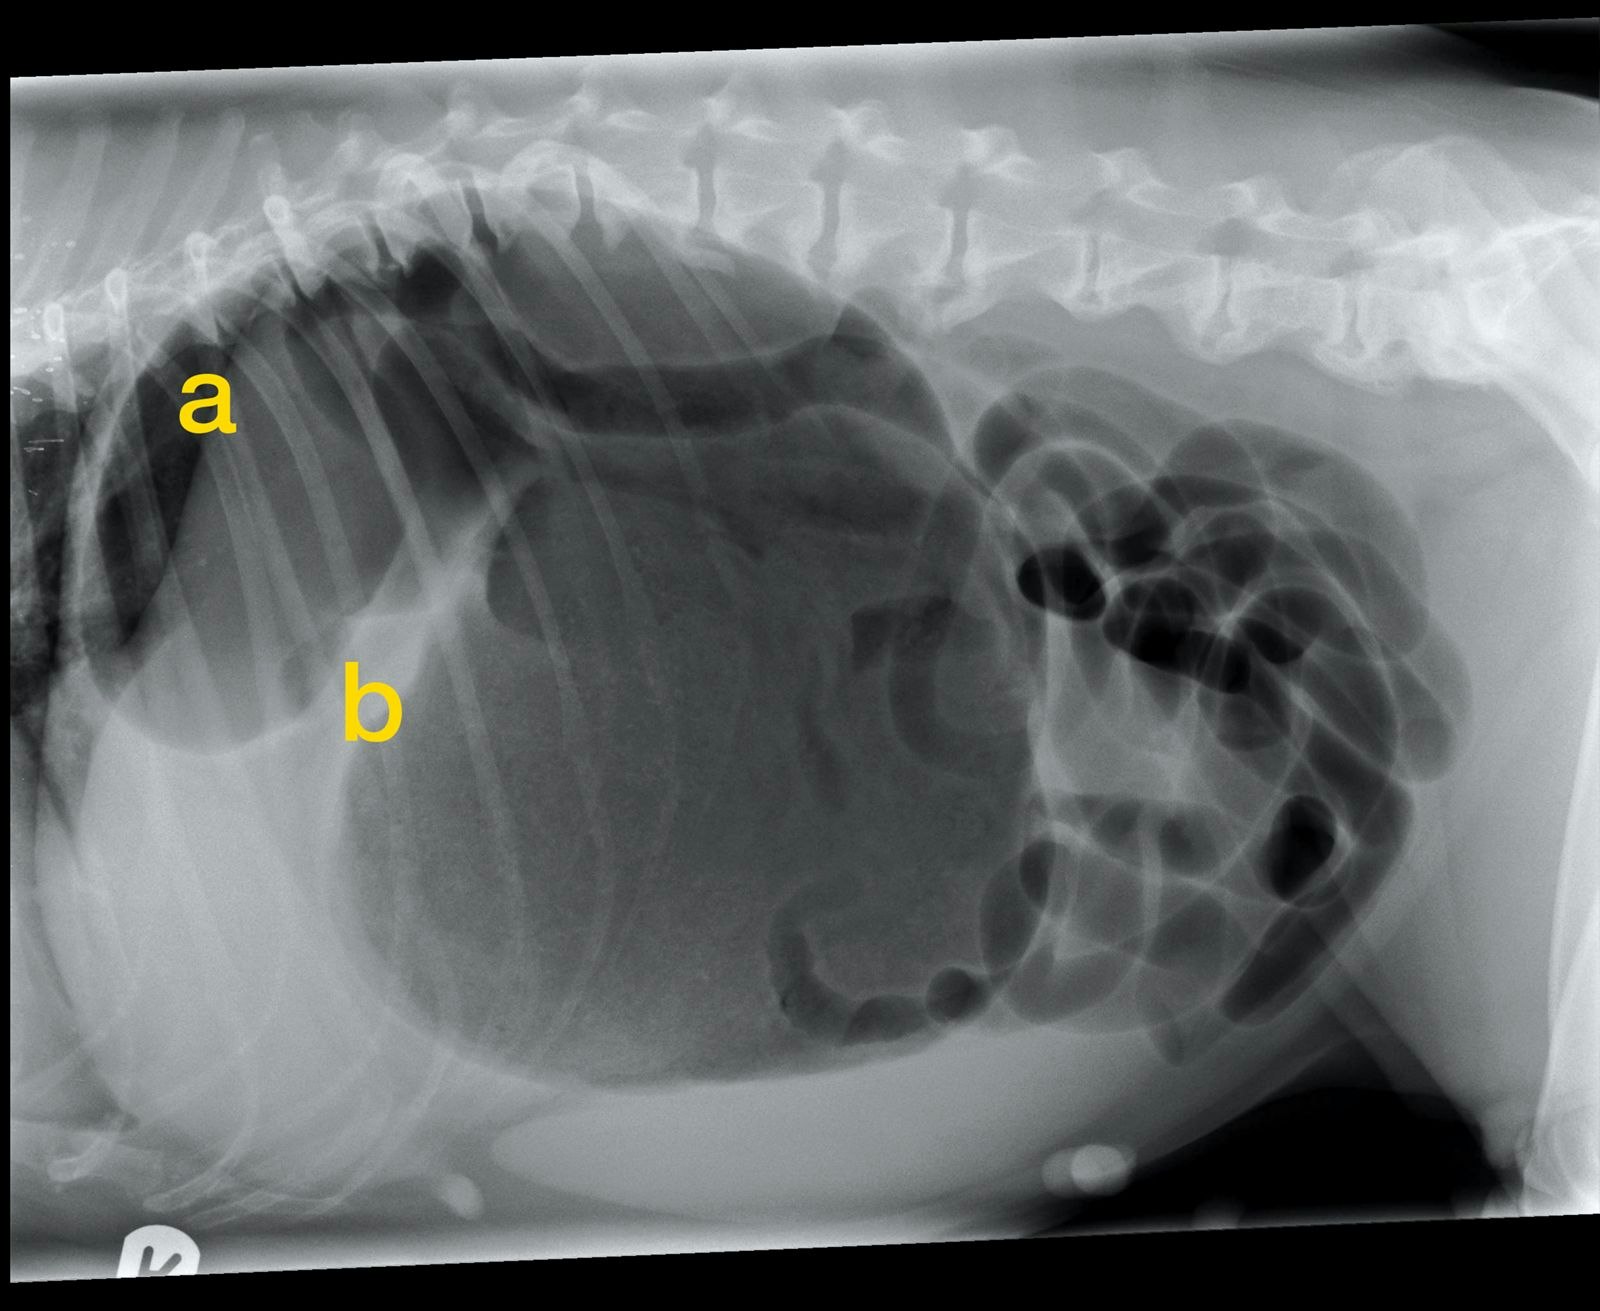 Eine rechtslaterale abdominale Röntgenaufnahme bestätigt MDV. Der Pylorus ist die kleinere gasgefüllte Struktur (a), abgegrenzt gegen den Magenfundus durch ein Weichteilgewebeband (b). In diesem Fall trennt das Weichteilgewebeband die beiden gasgefüllten Strukturen nicht vollständig.